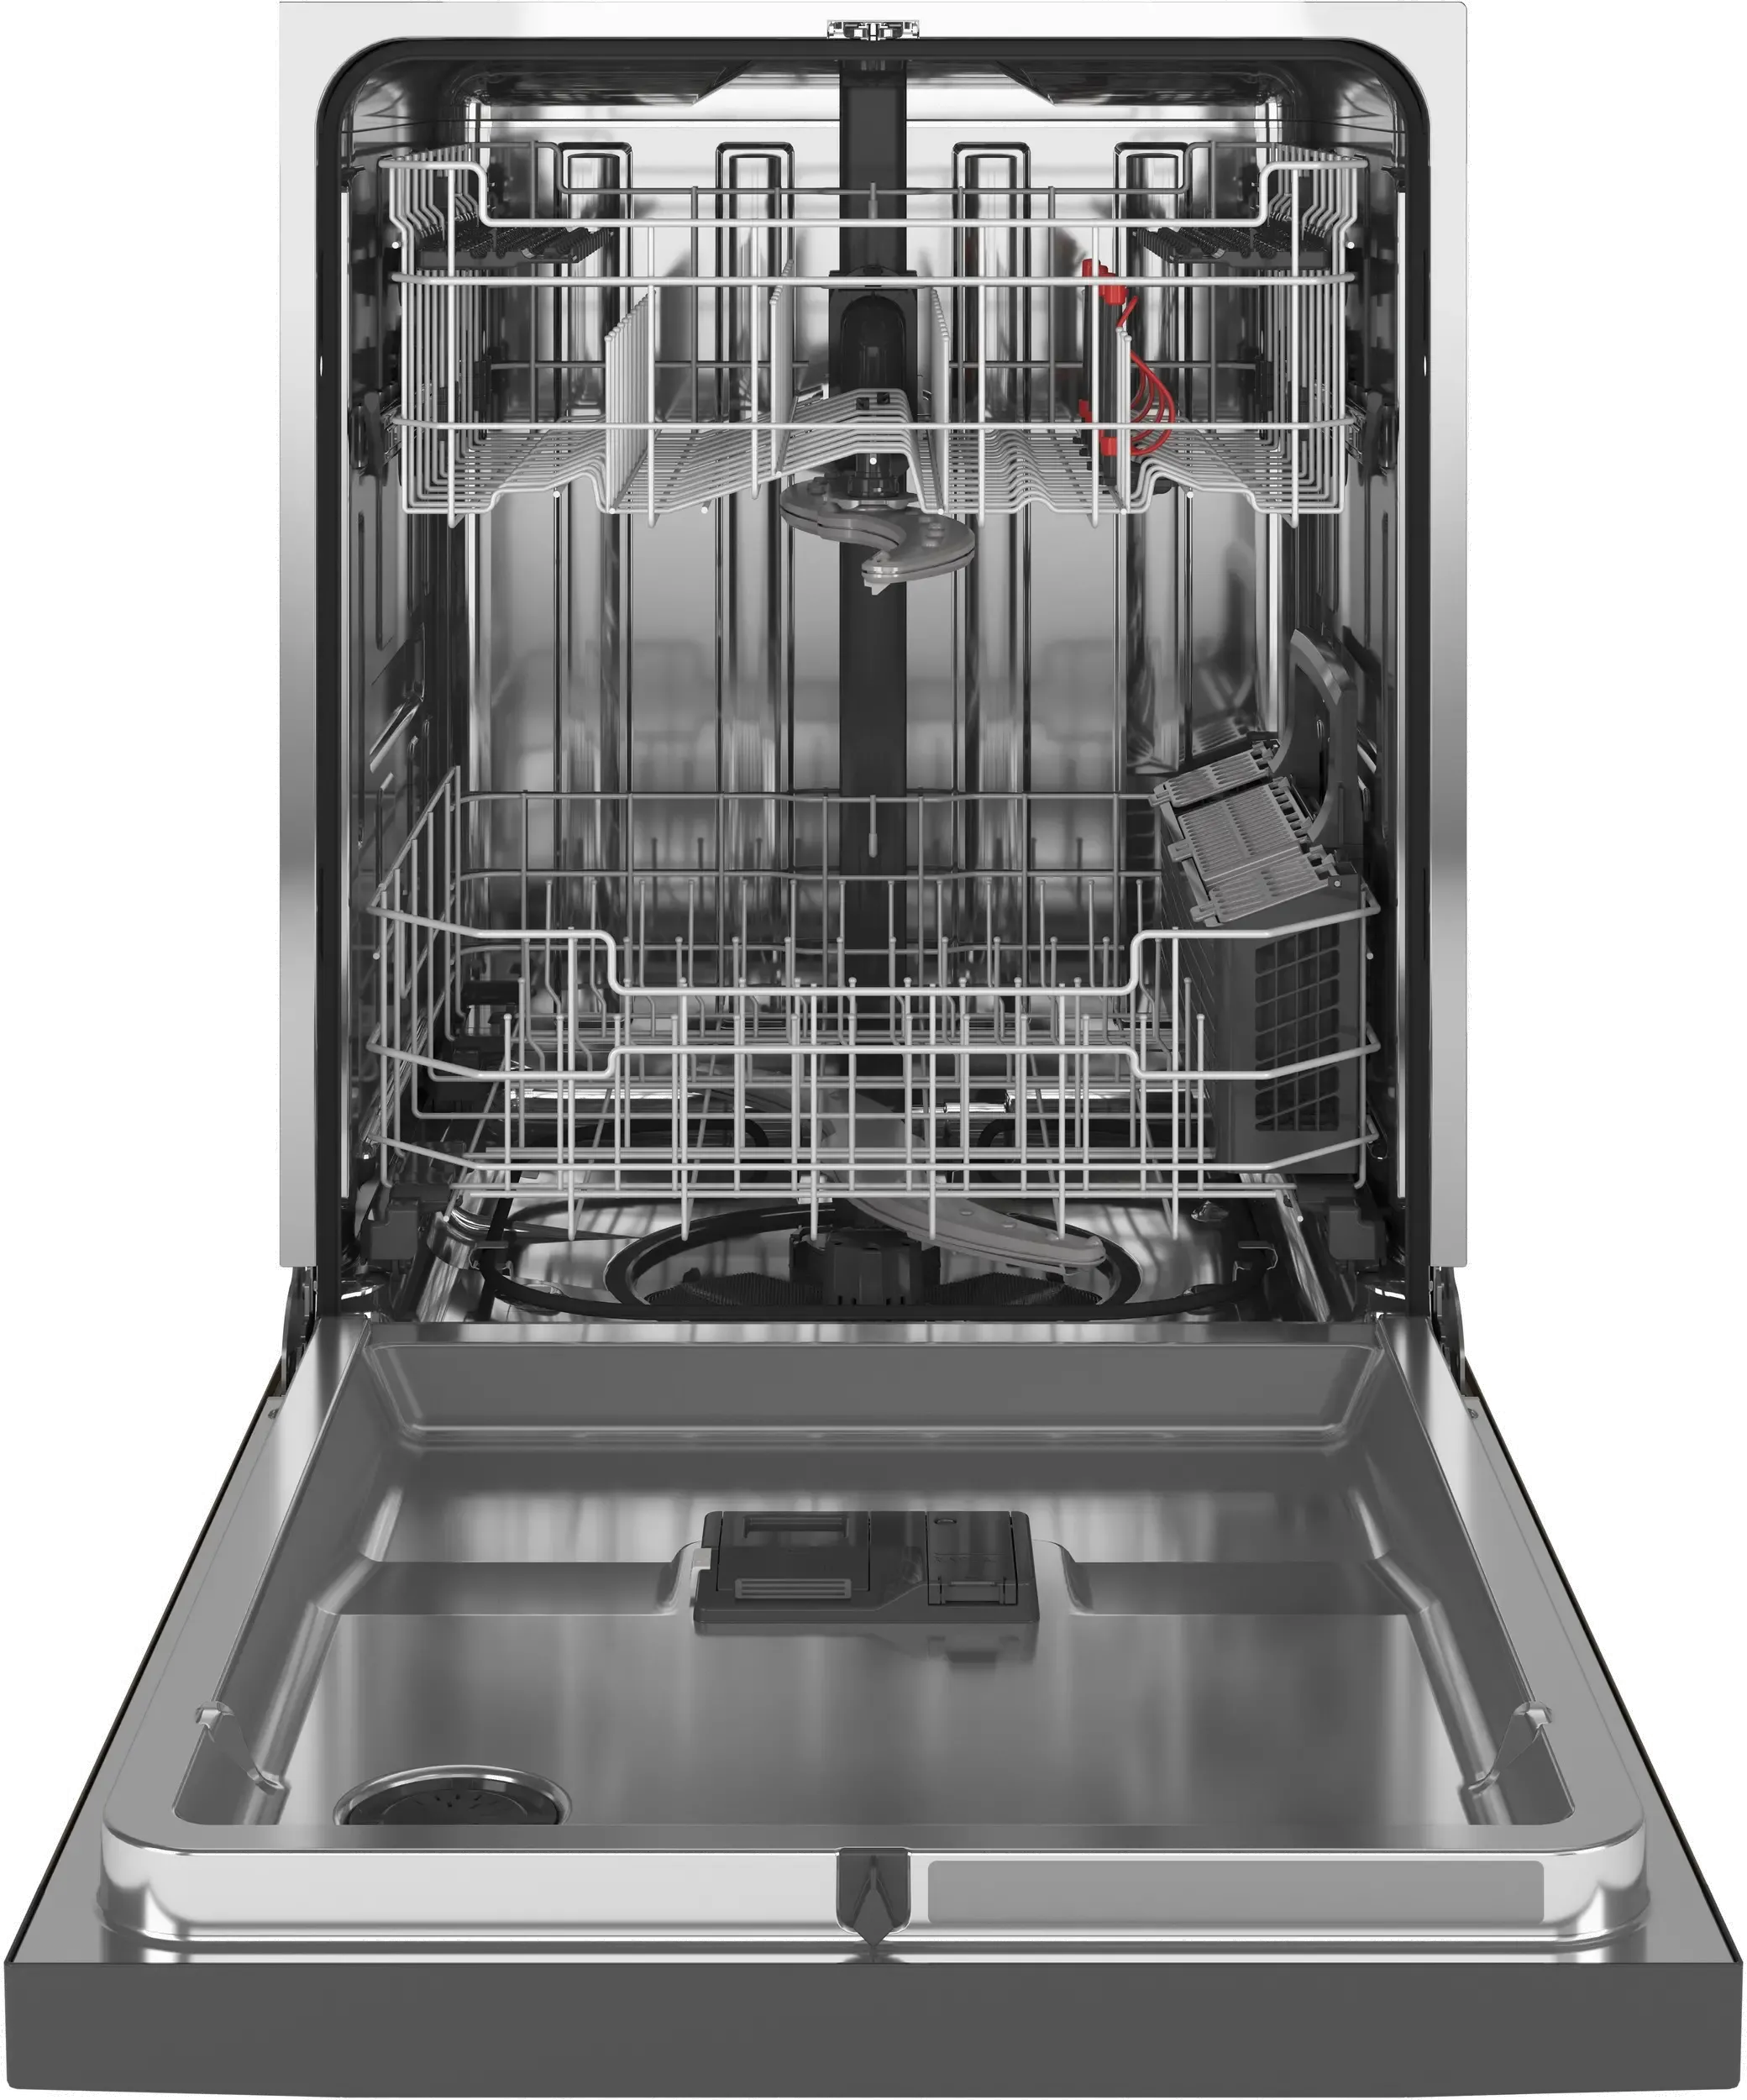 GE Top Control Dishwasher GDT645SMNES